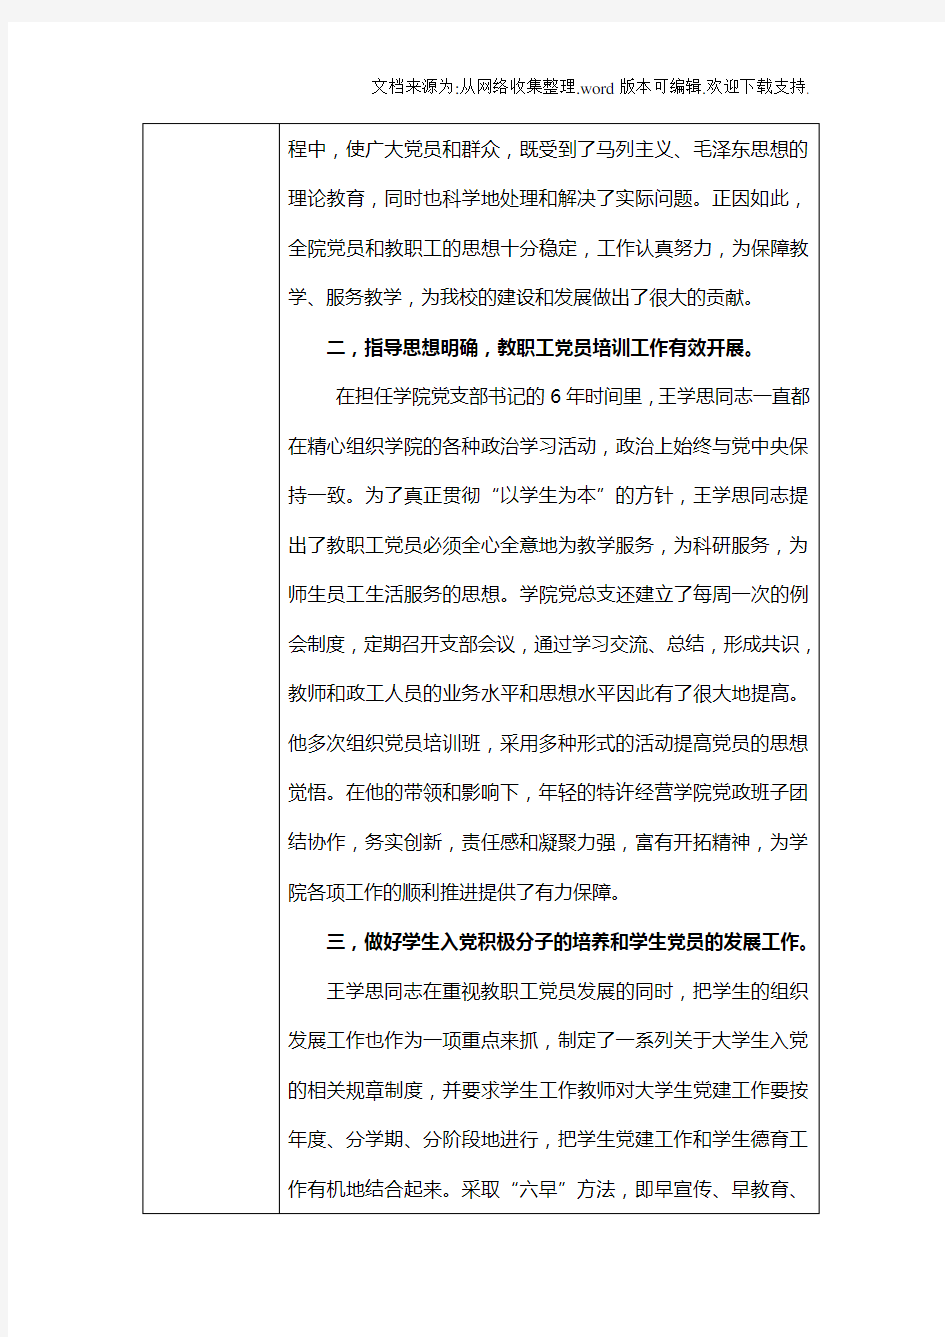 北京师范大学珠海分校优秀党务工作者推荐表